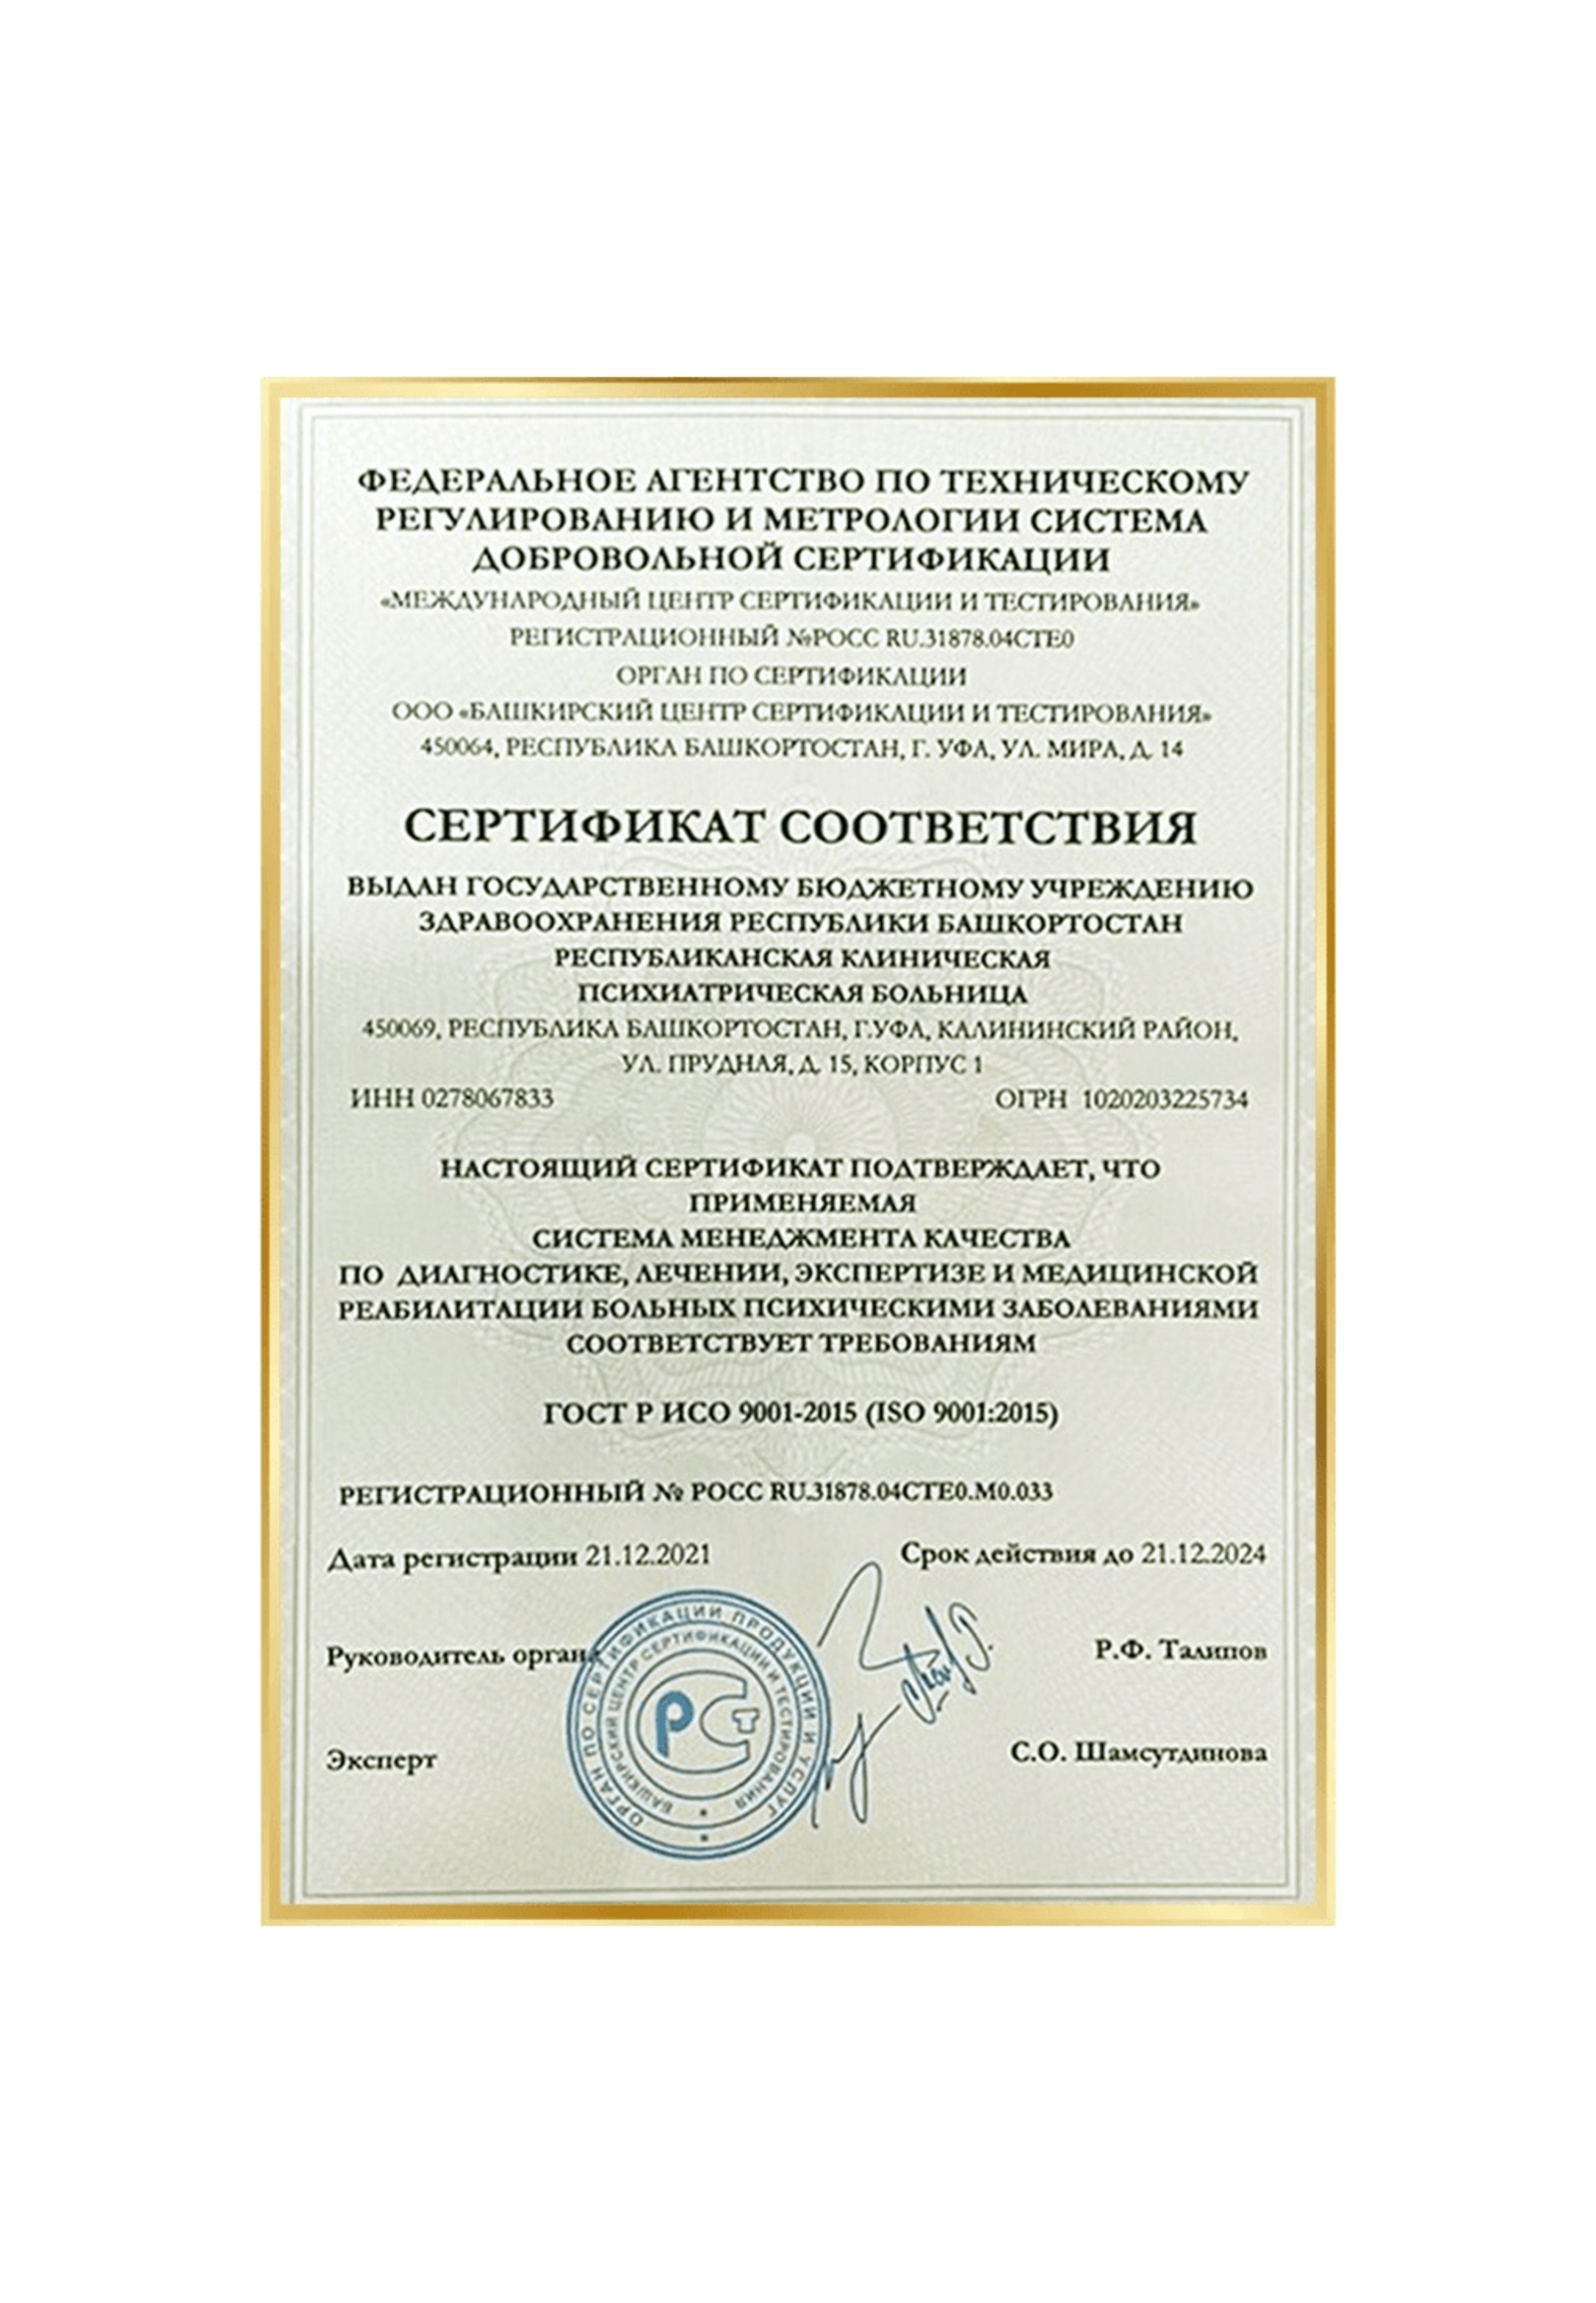 Психиатрическая клиника Башкирии получила Международный сертификат